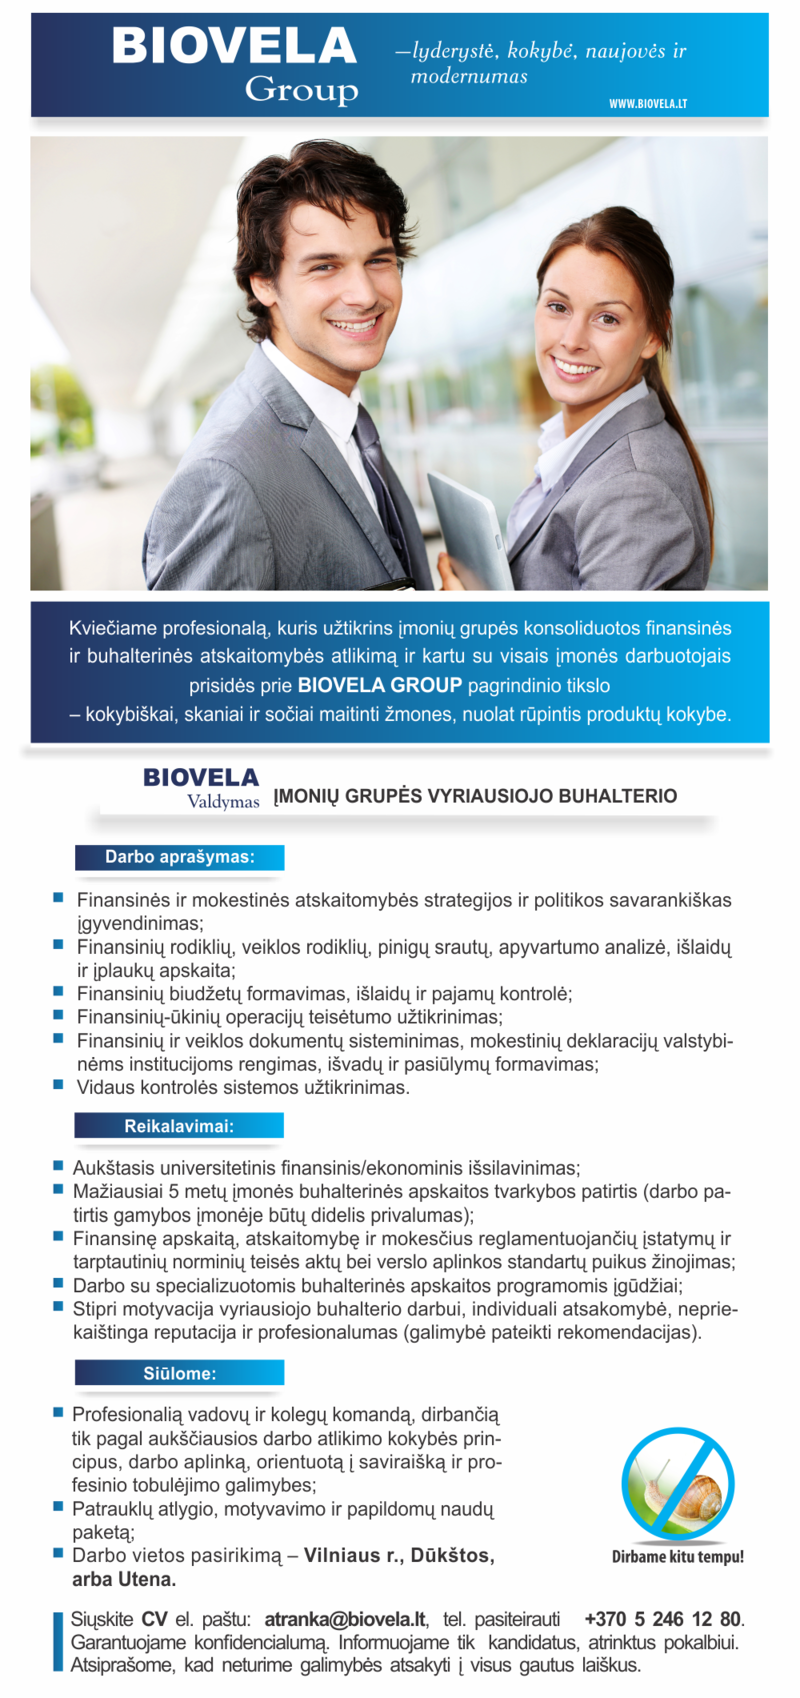 Biovela Group, UAB Įmonių grupės vyriausiasis buhalteris